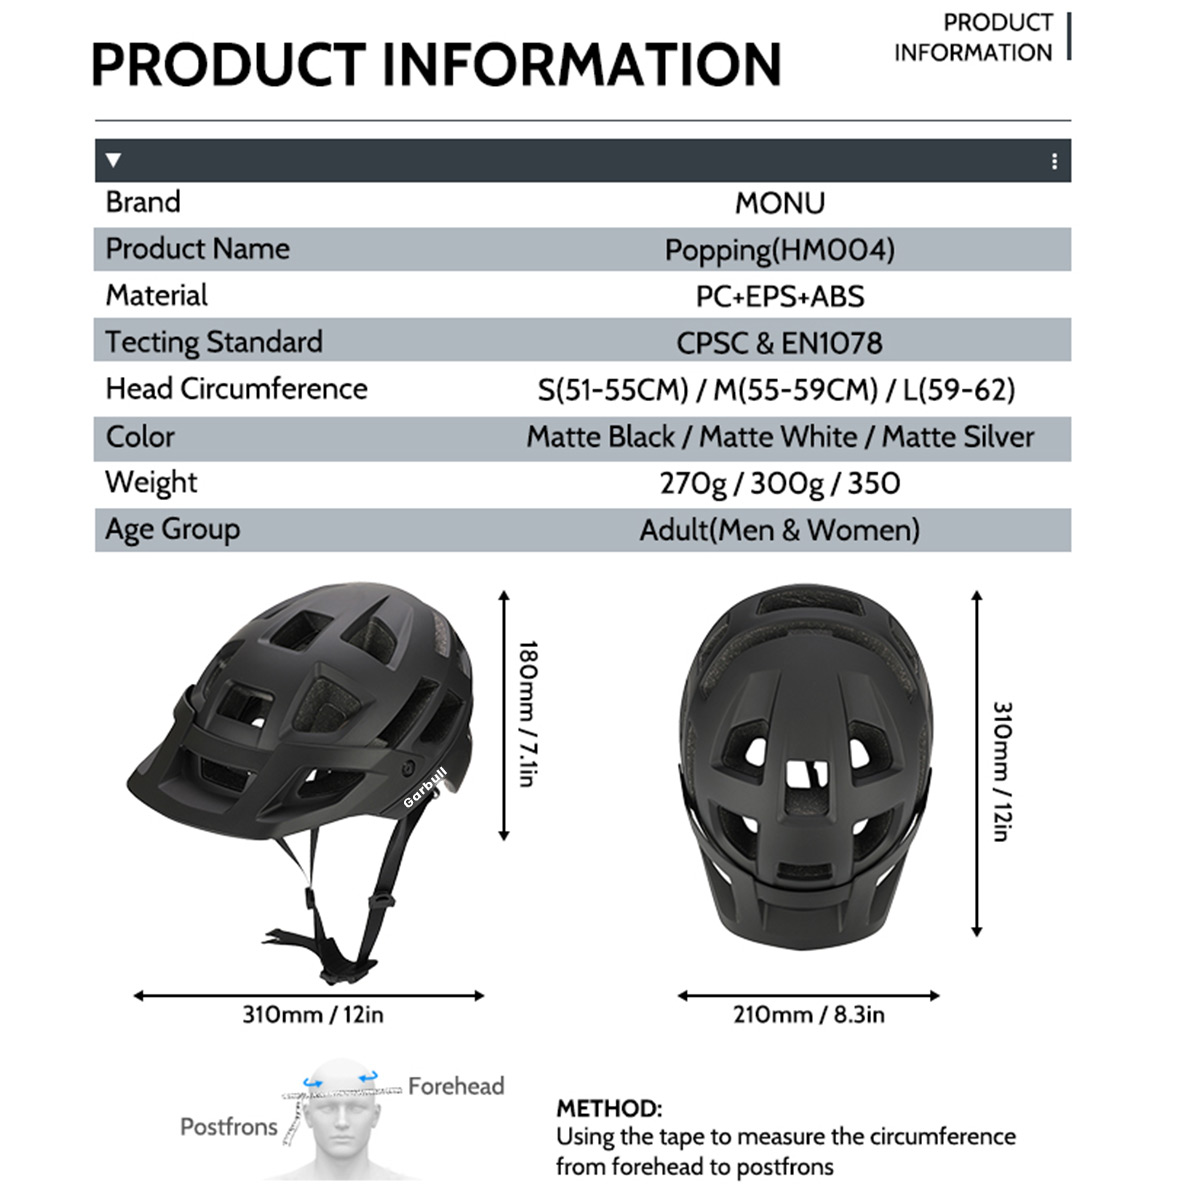 PROSCENIC Helm Mountainbike, 59-62 cm schwarz) cm